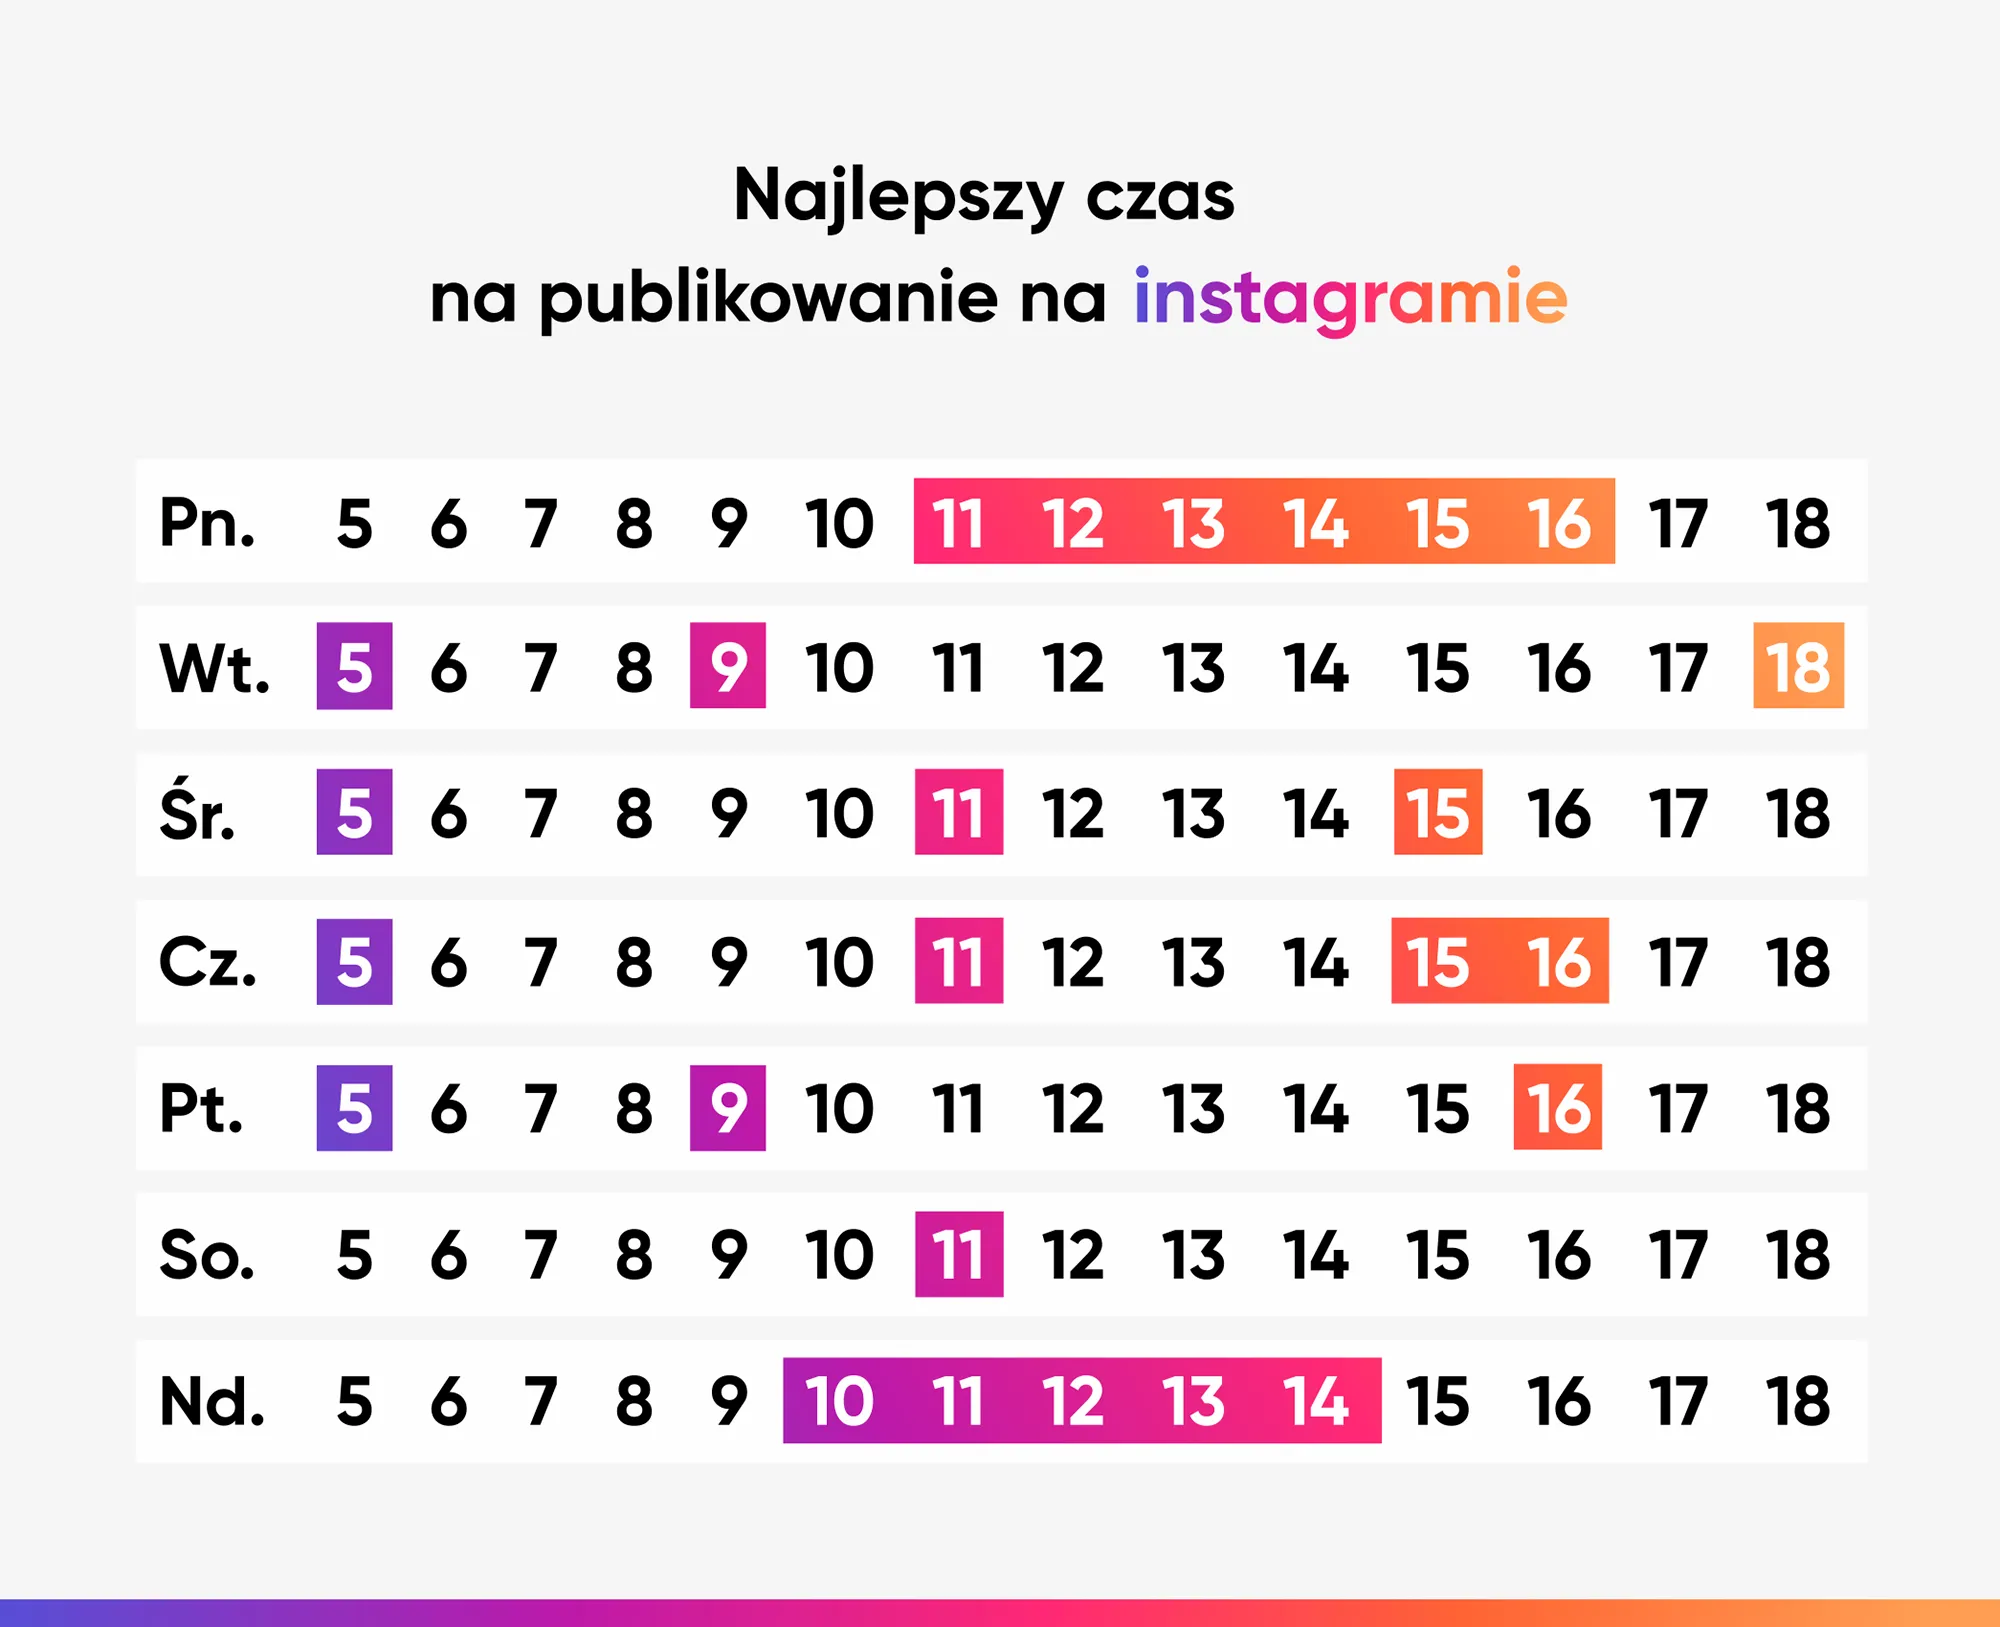 Tabela pokazująca najlepszy czas na publikowanie postów na Instagramie